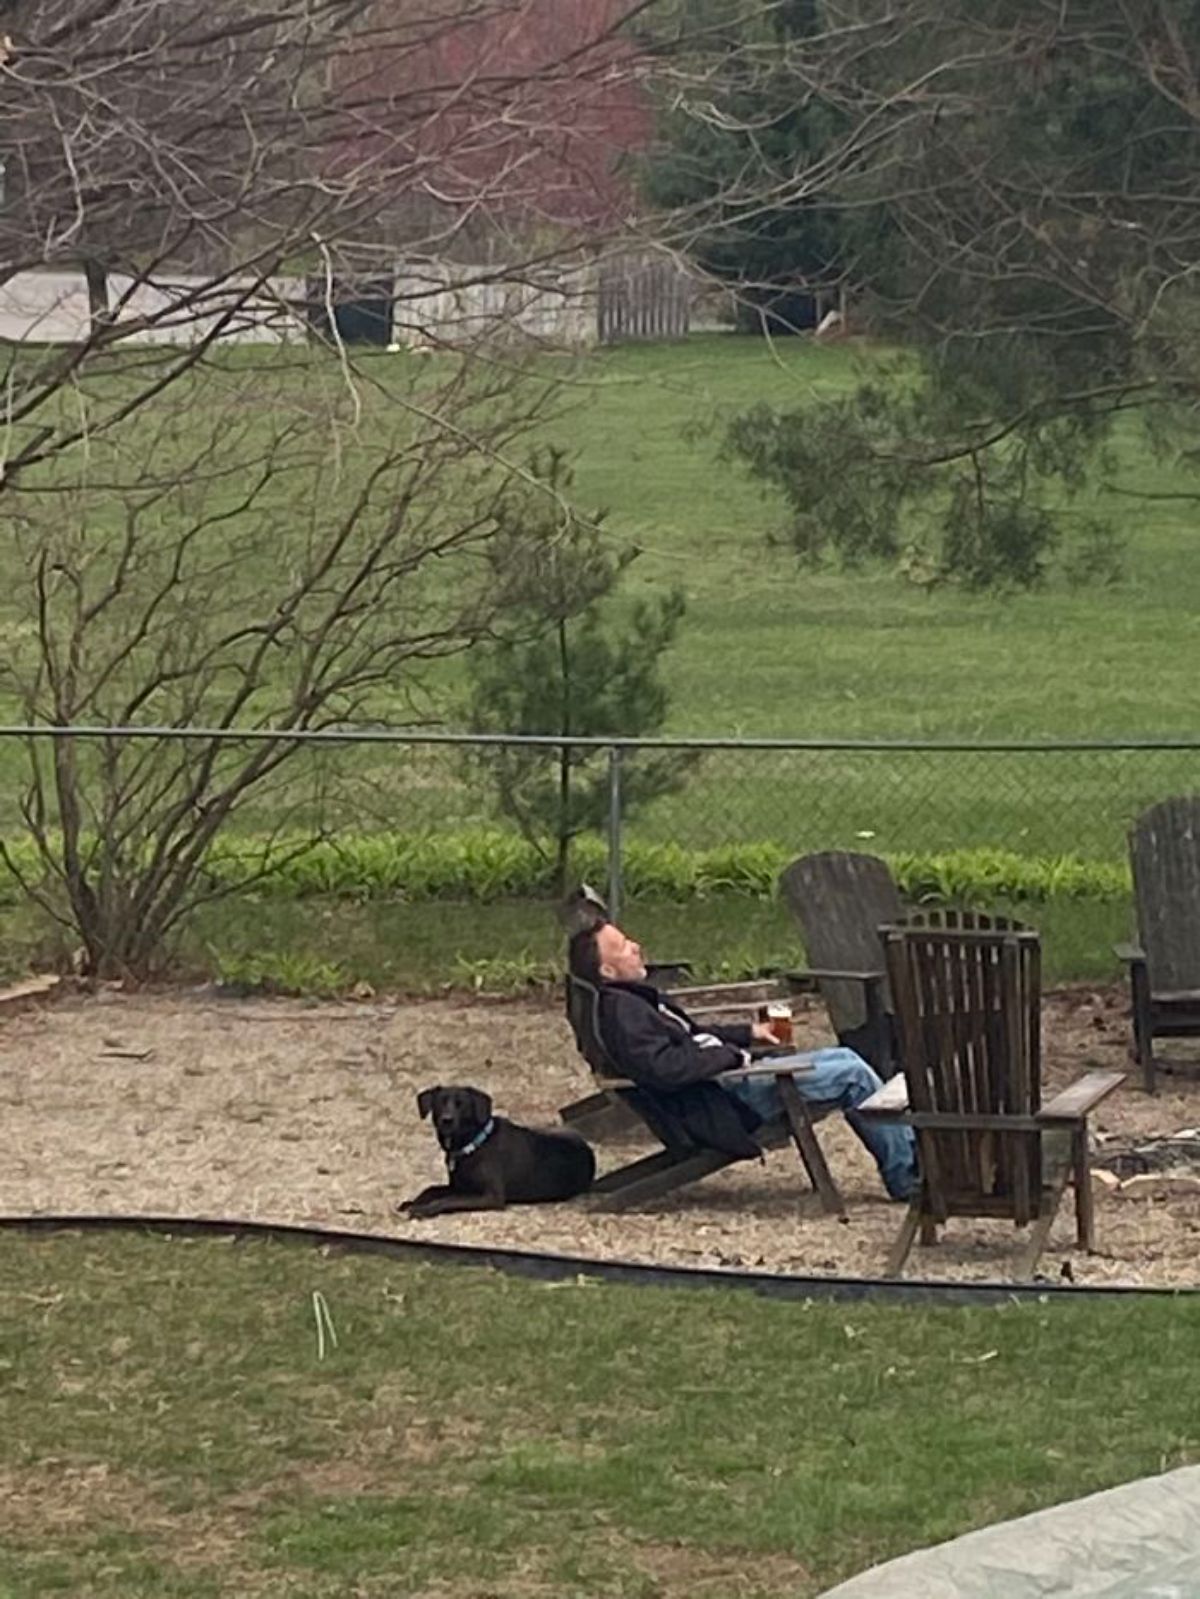 black labrador retriever sitting behind a lawn chair where a man is sitting